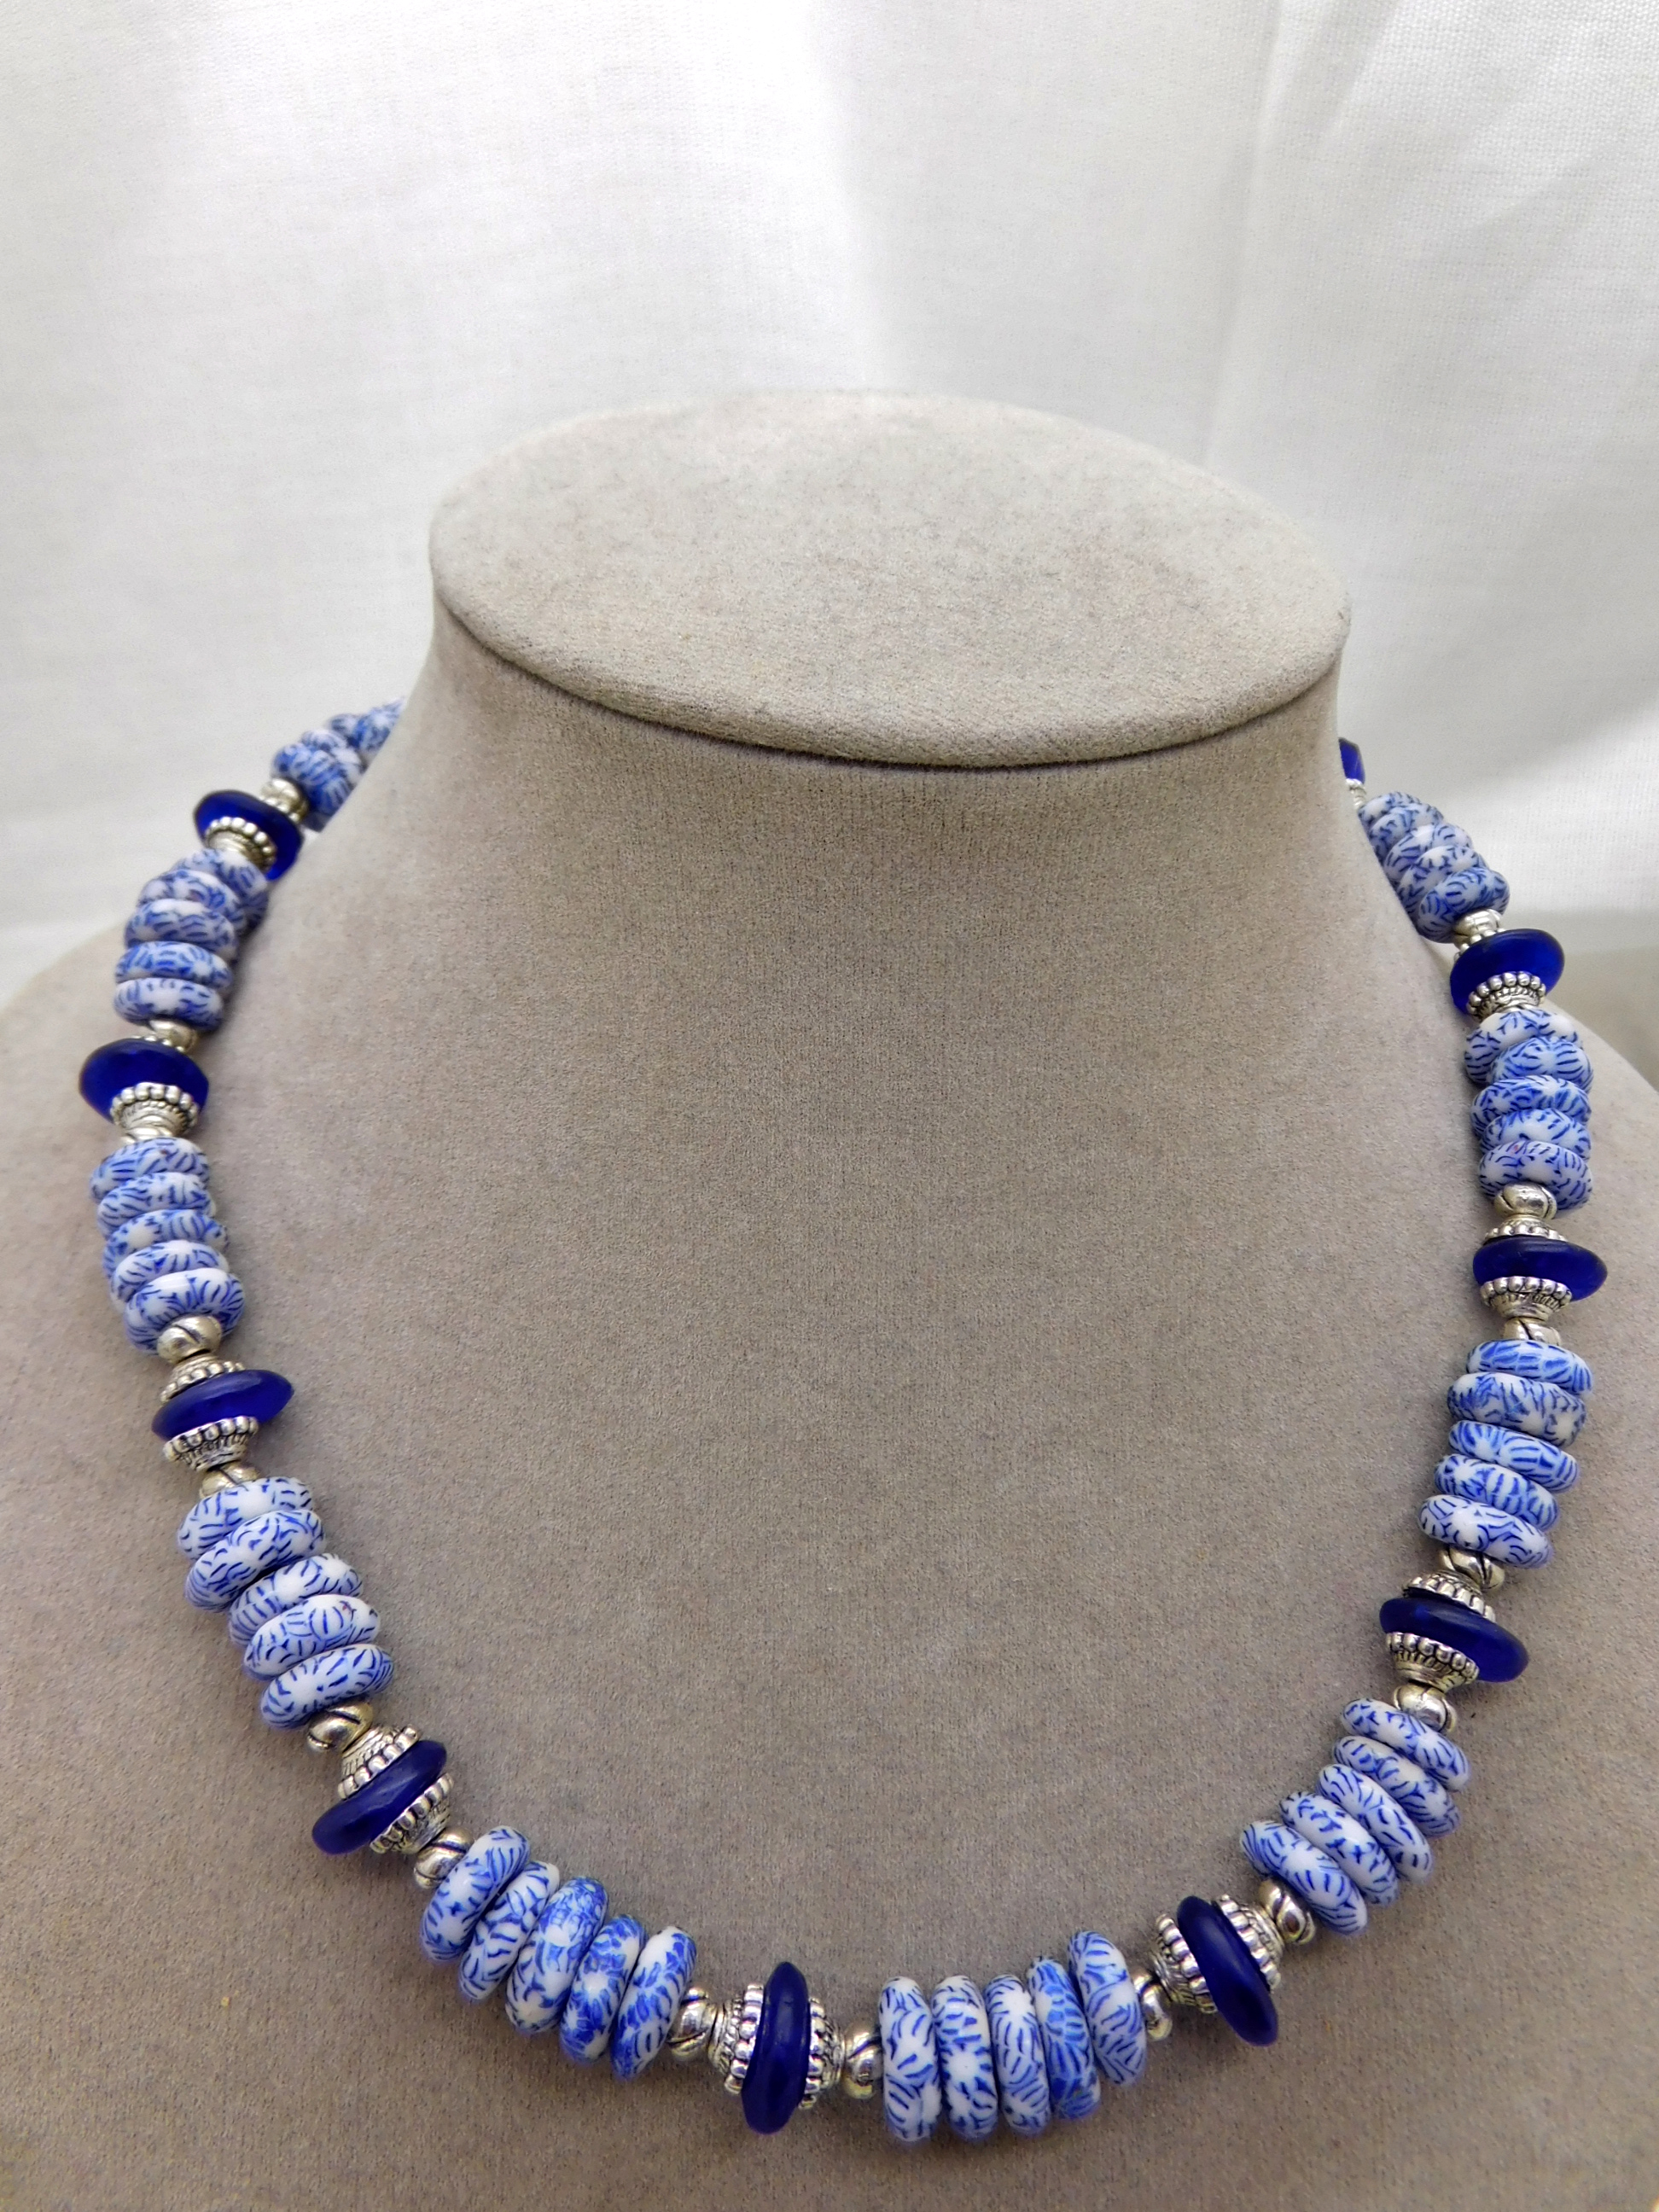 Halskette - afrikanische Krobo-Glas-Rondelle - weiß, blau, silber